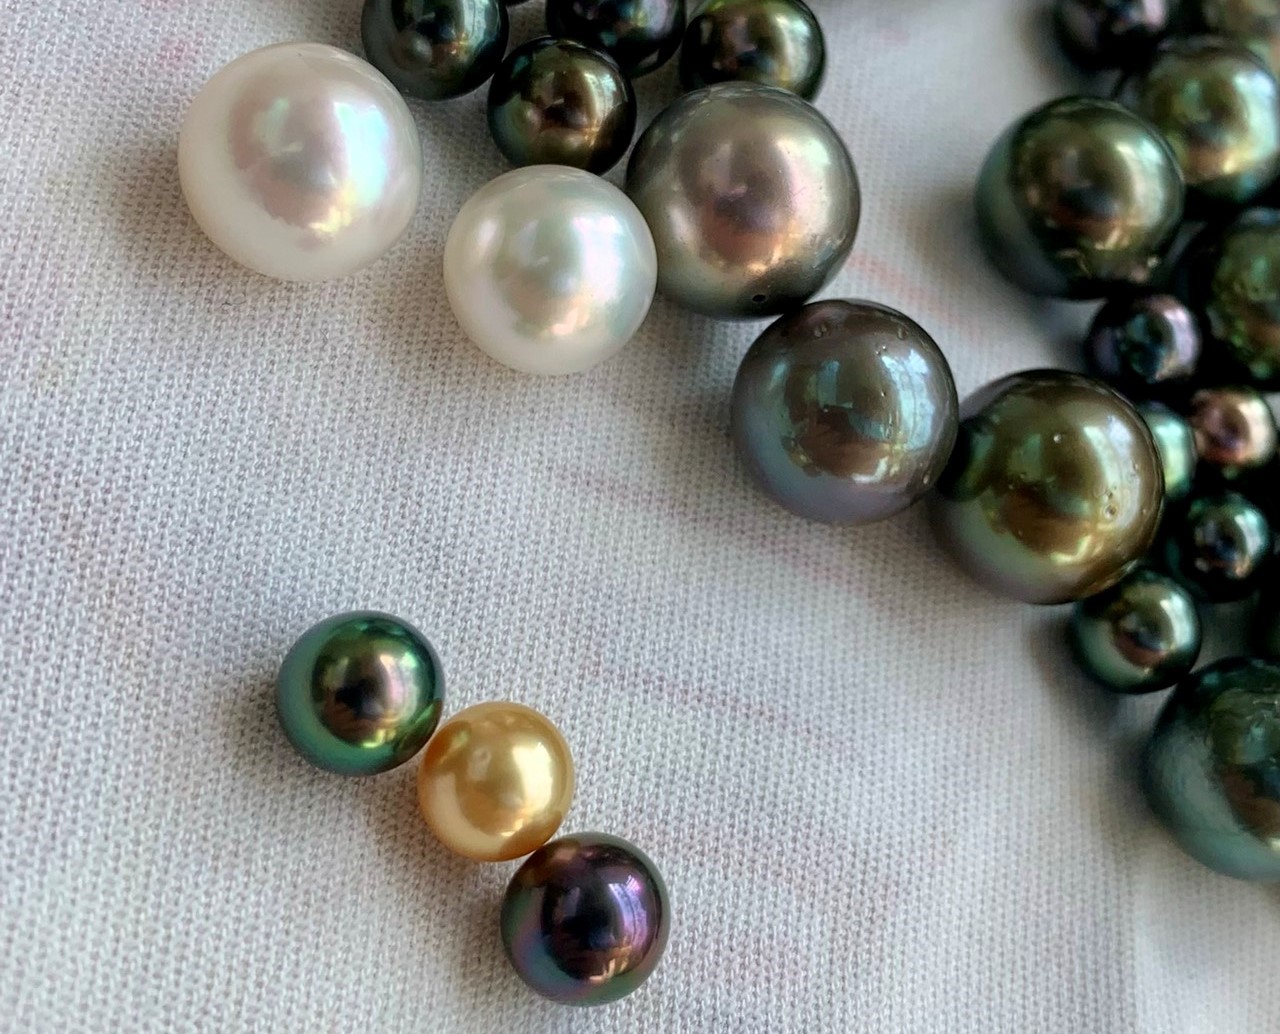 Ý Nghĩa Văn Hóa Của Ngọc Trai Tại Các Nước Châu Á - Marian Pearls